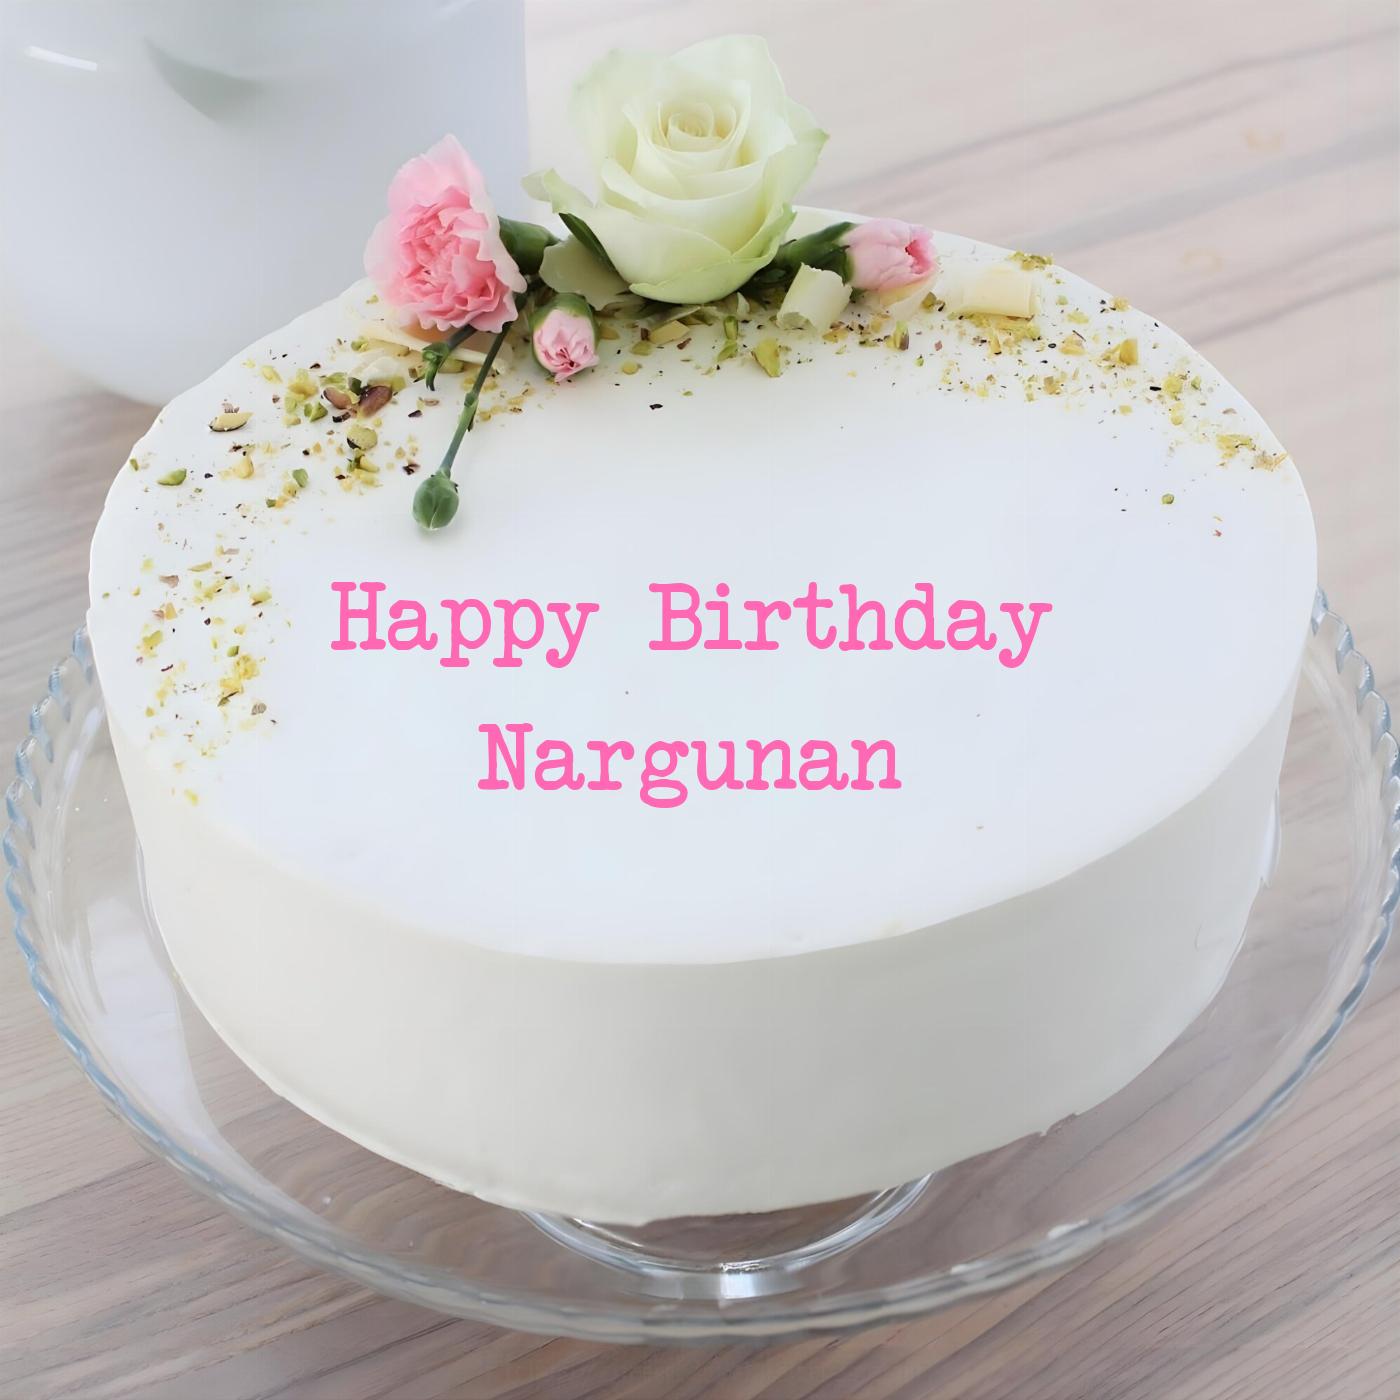 Happy Birthday Nargunan White Pink Roses Cake